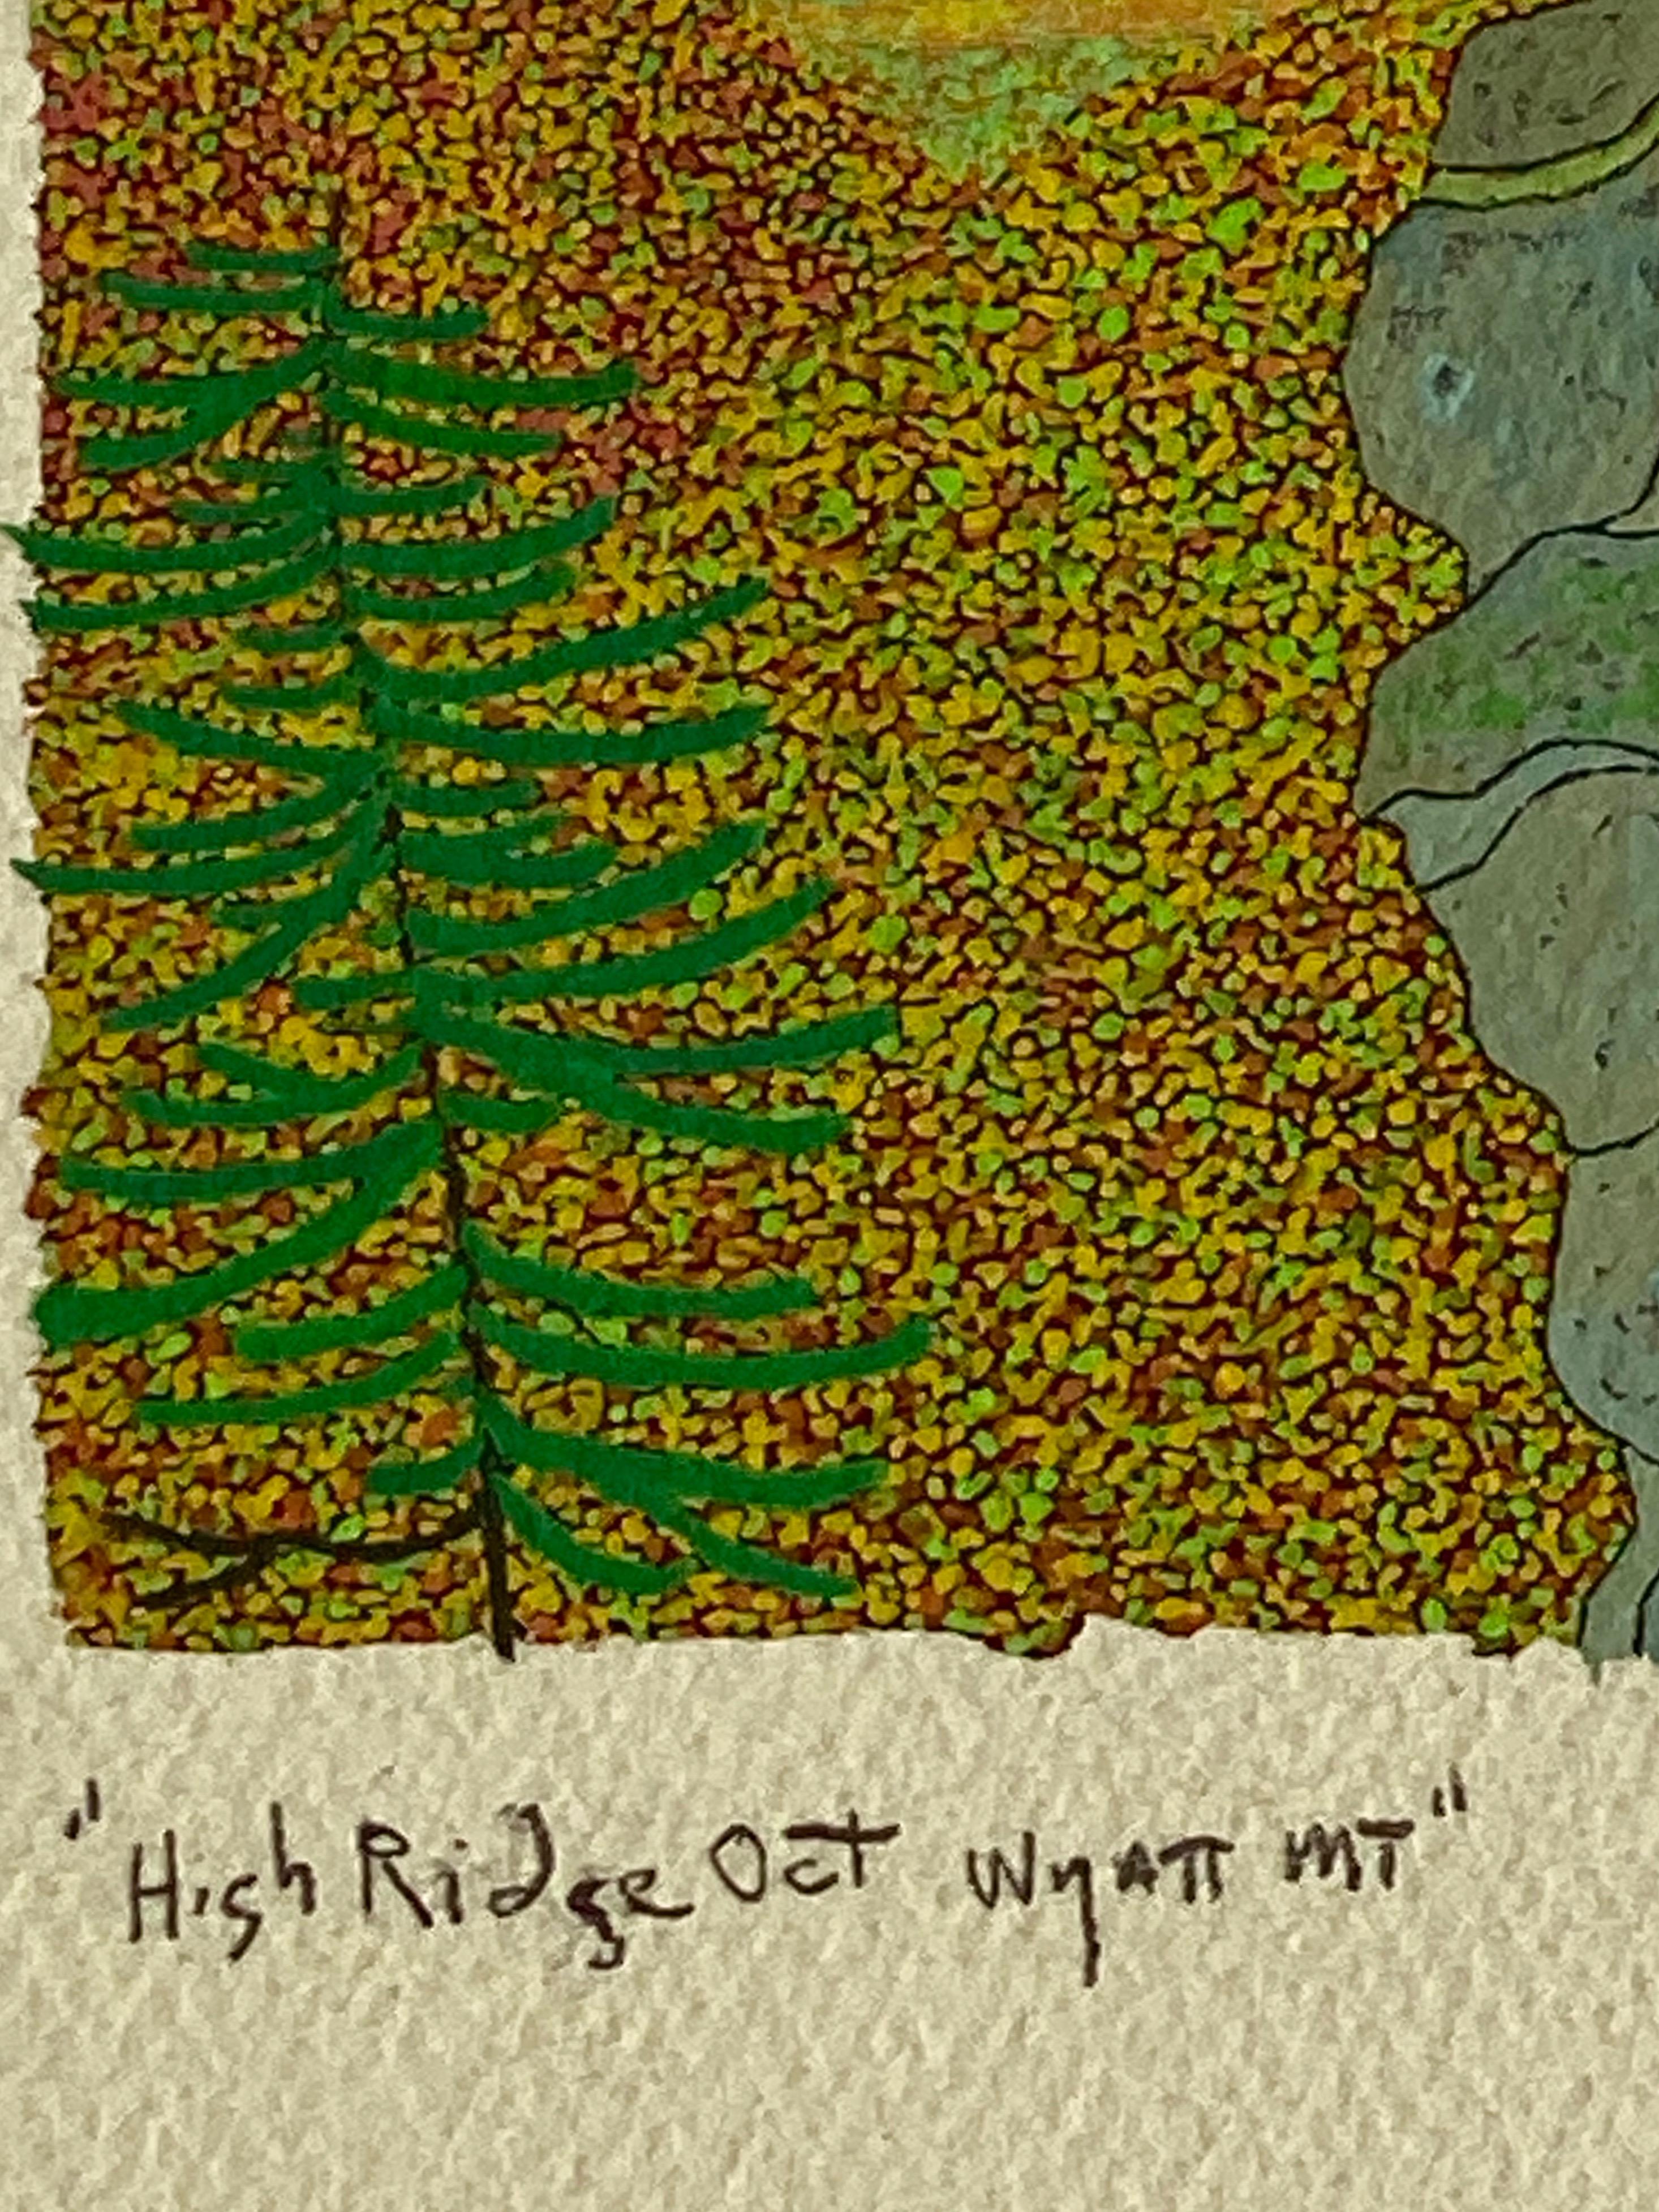 High Ridge, Oktober, Wyatt Mt, Gray Mountain, Grün, Gelb, Herbstlaub im Angebot 3